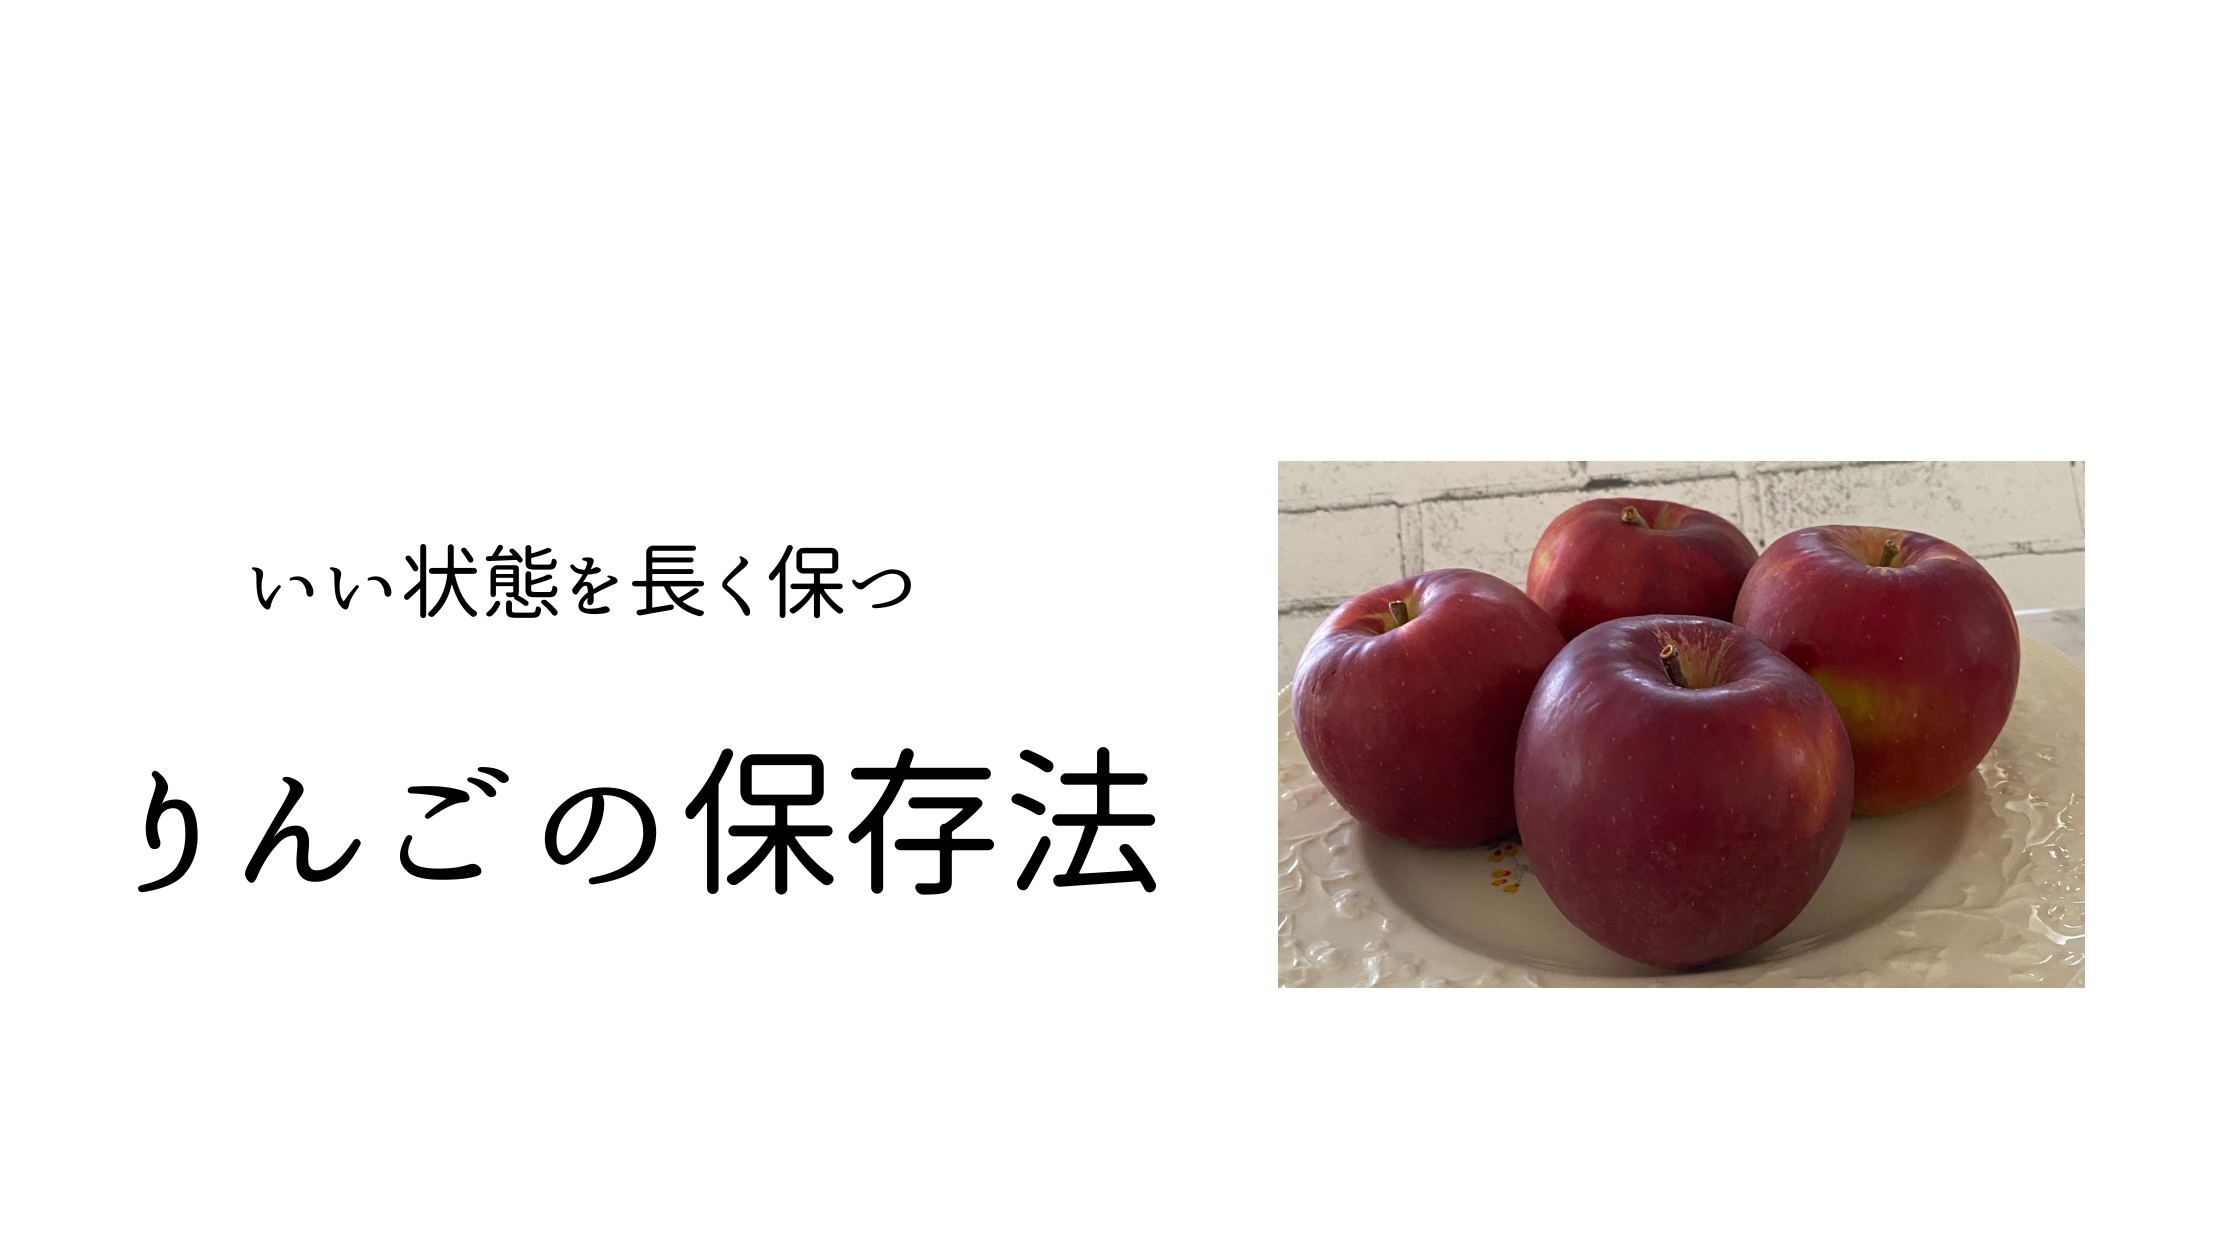 apple-preservation